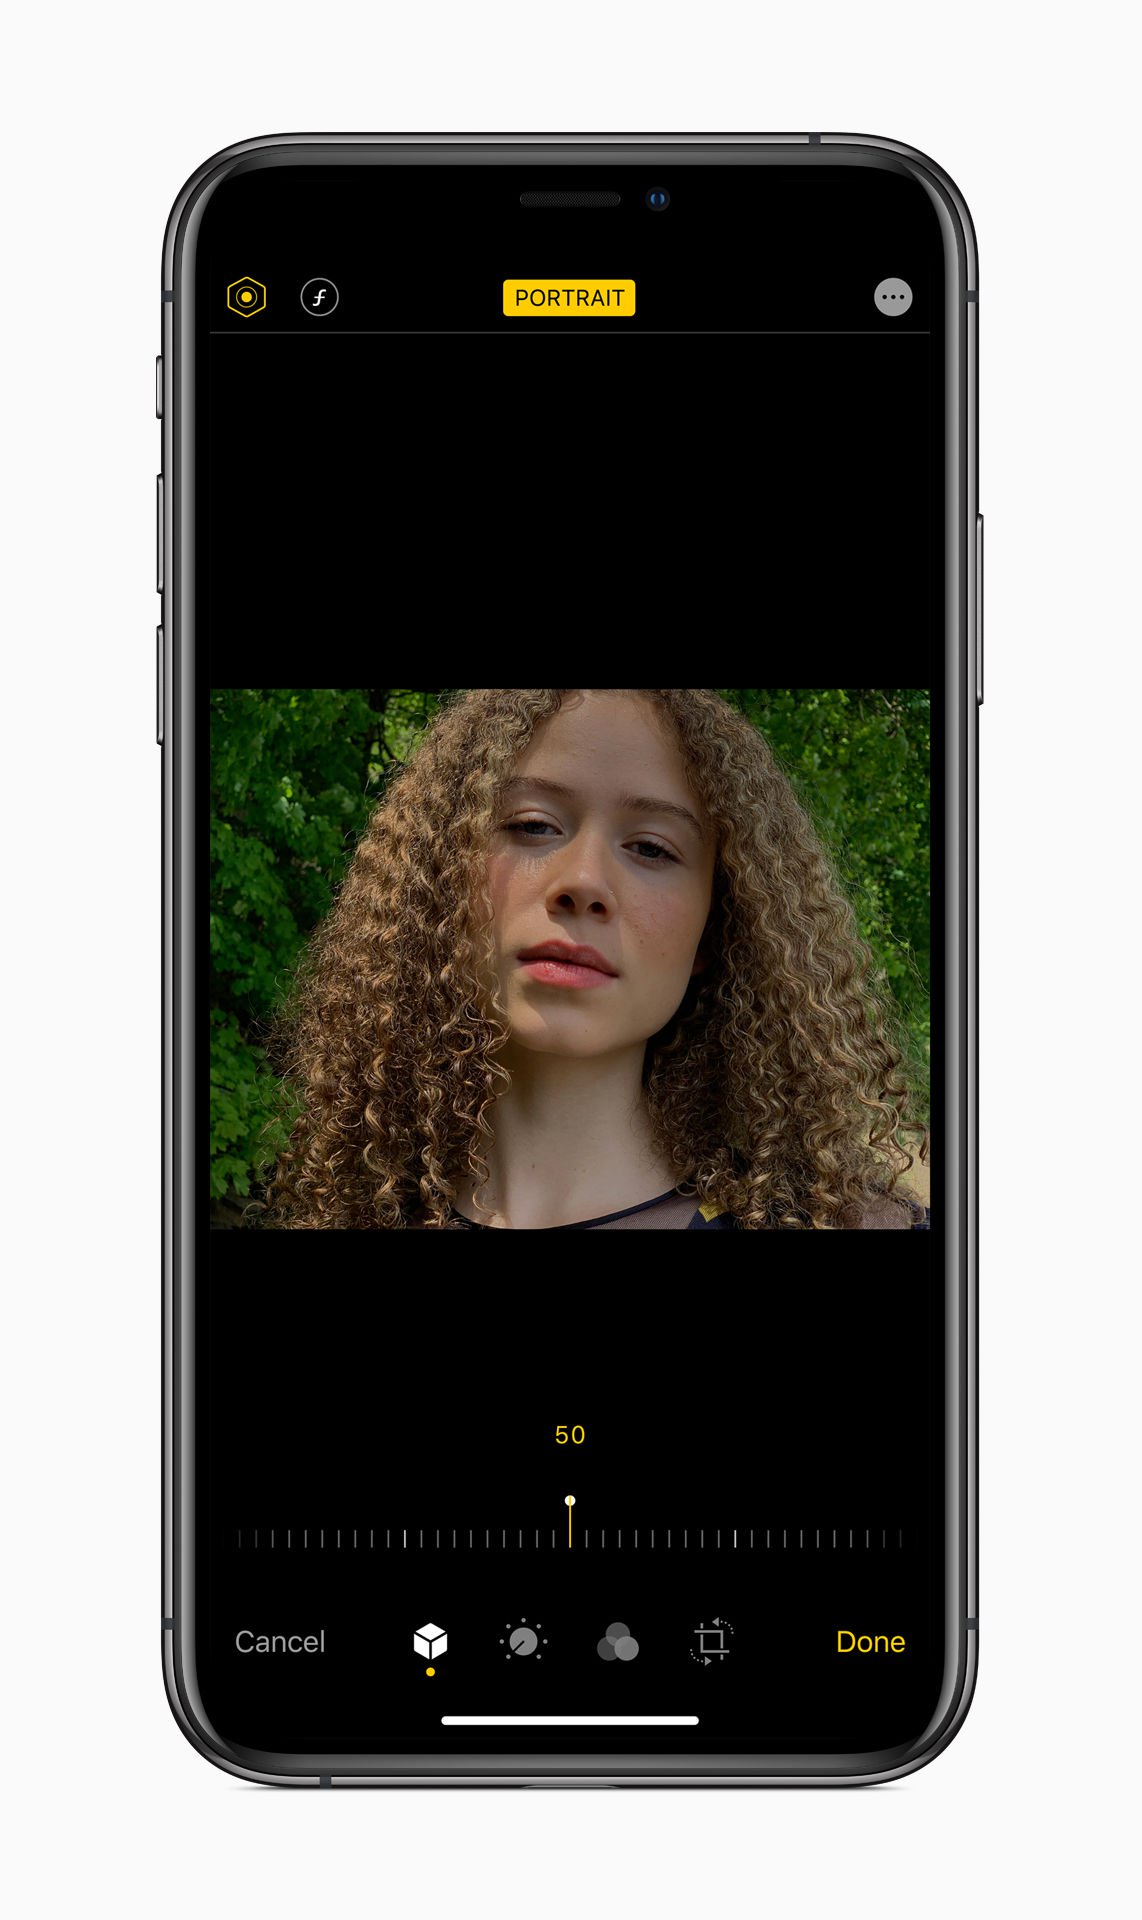 ویژگی های دوربین و Photos در iOS 13